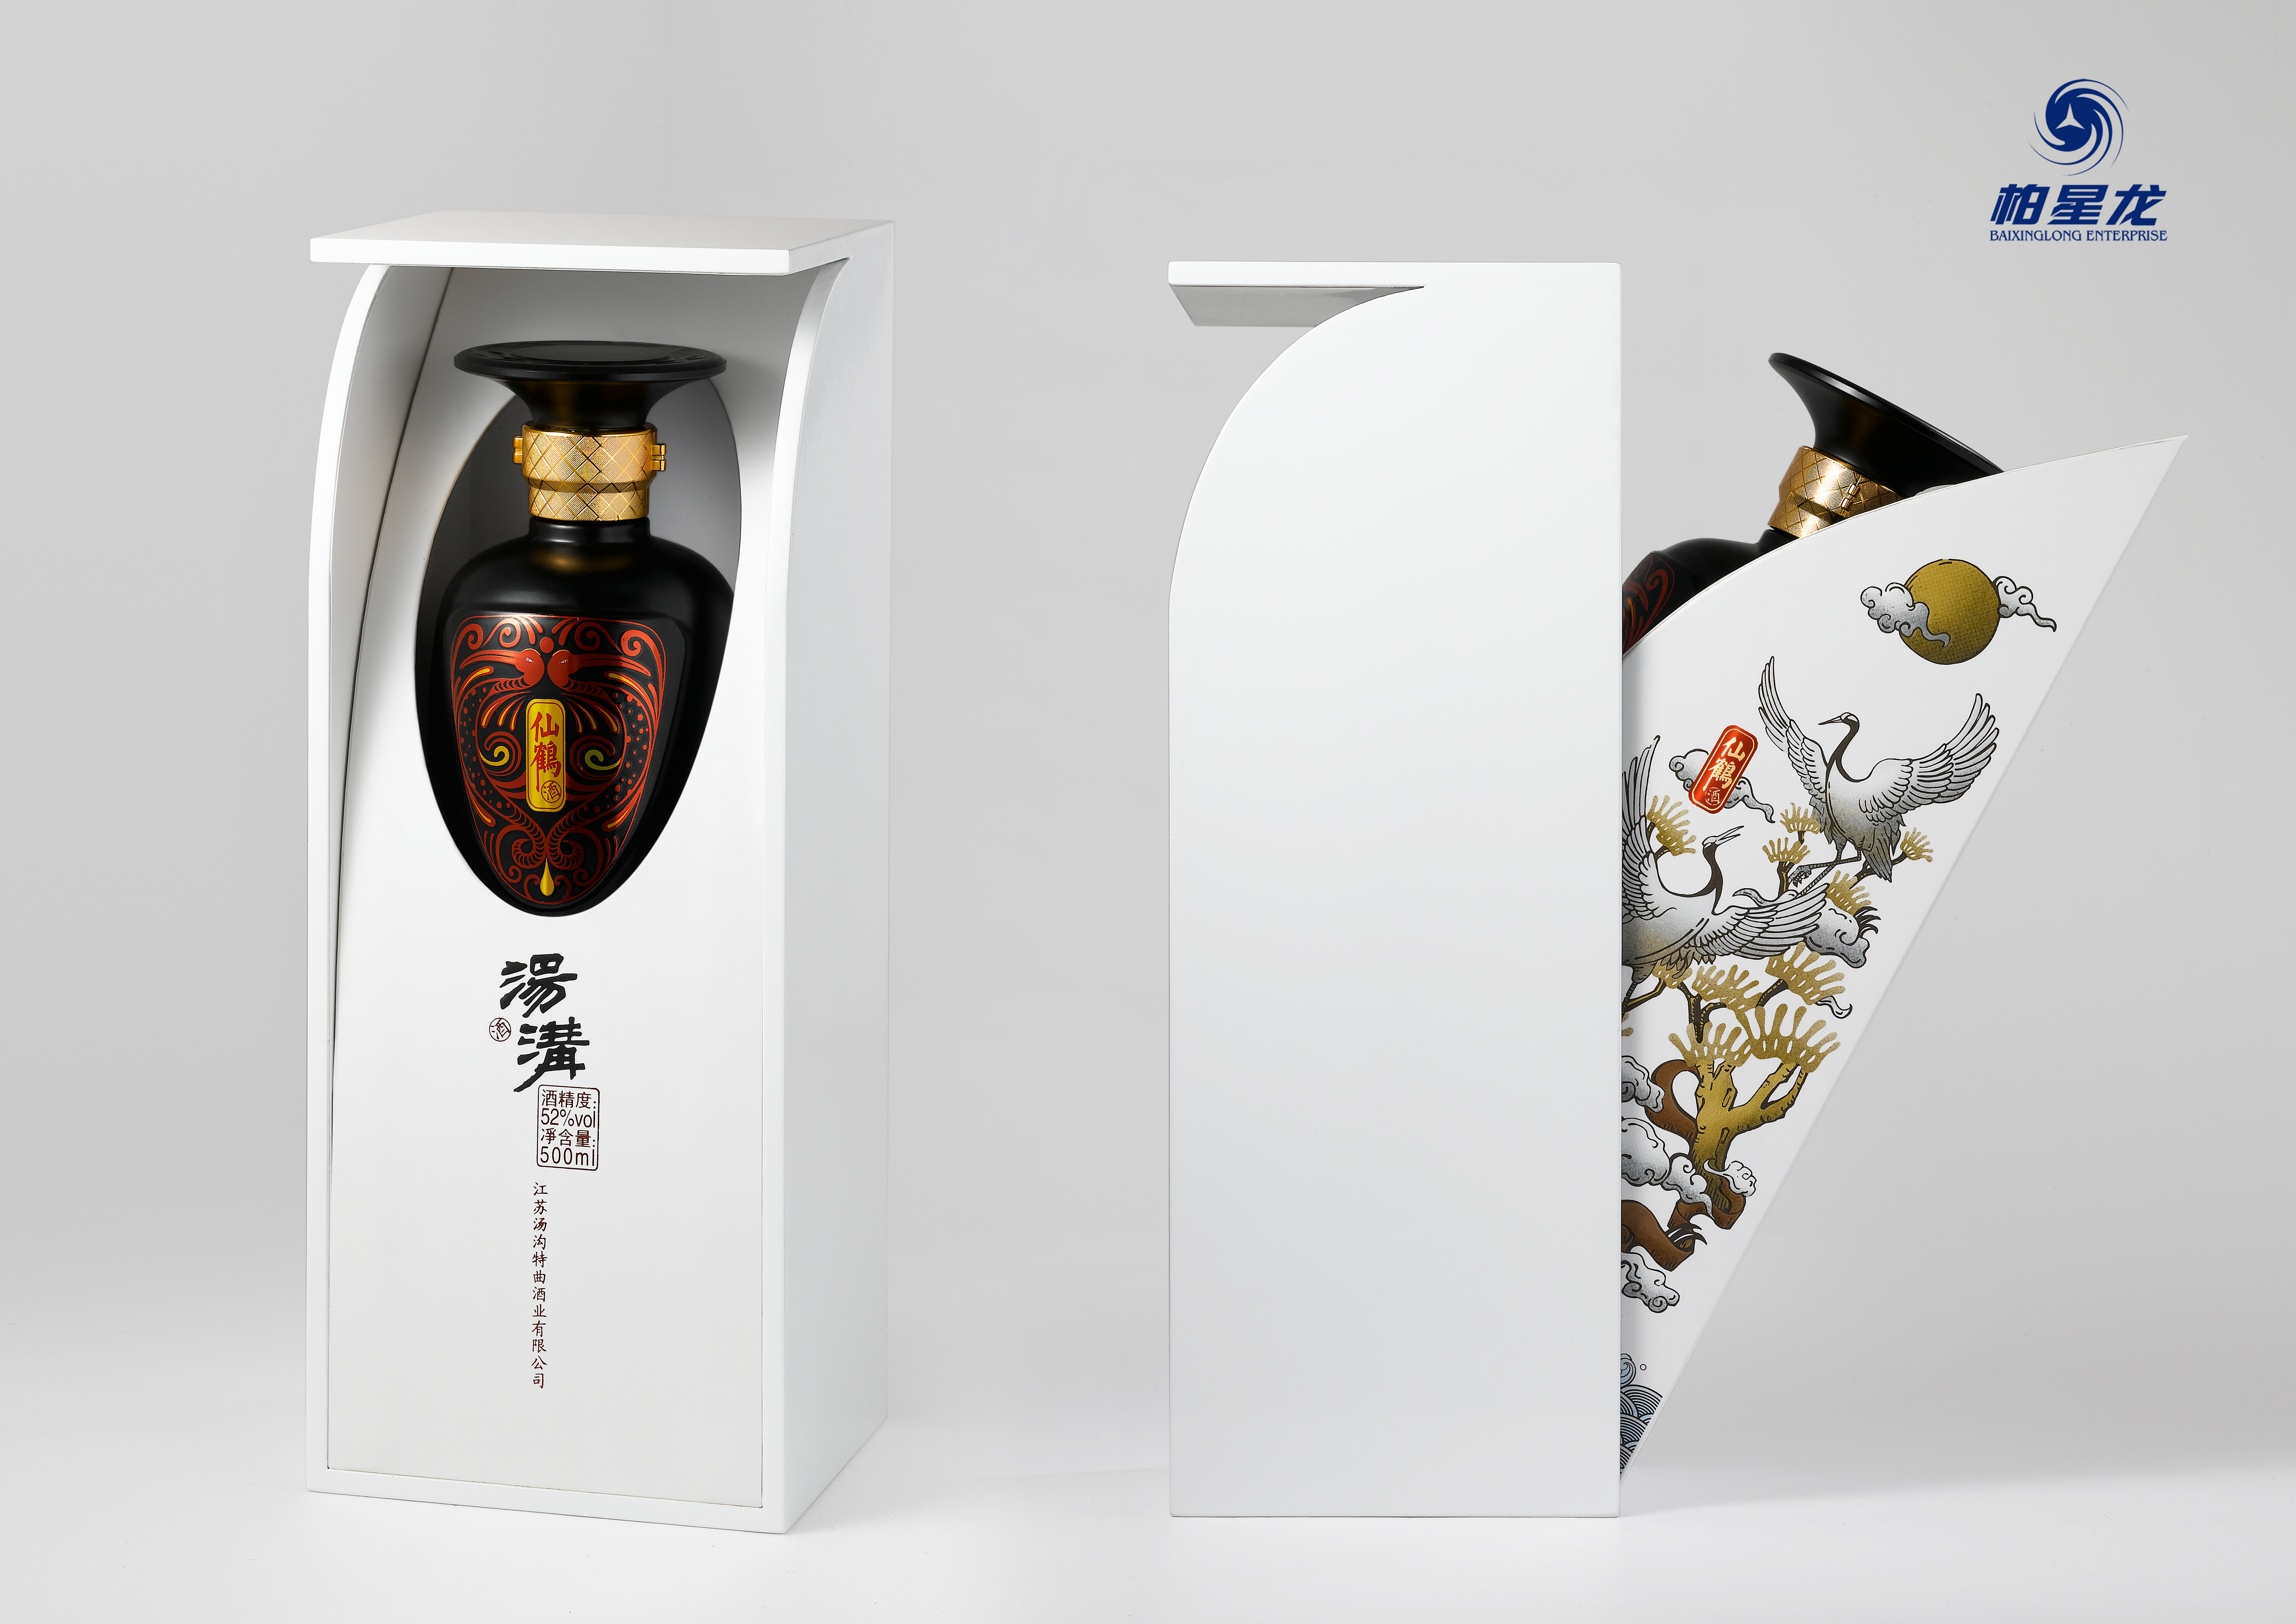 世界之星作品:汤沟仙鹤酒酒包装设计——柏星龙出品